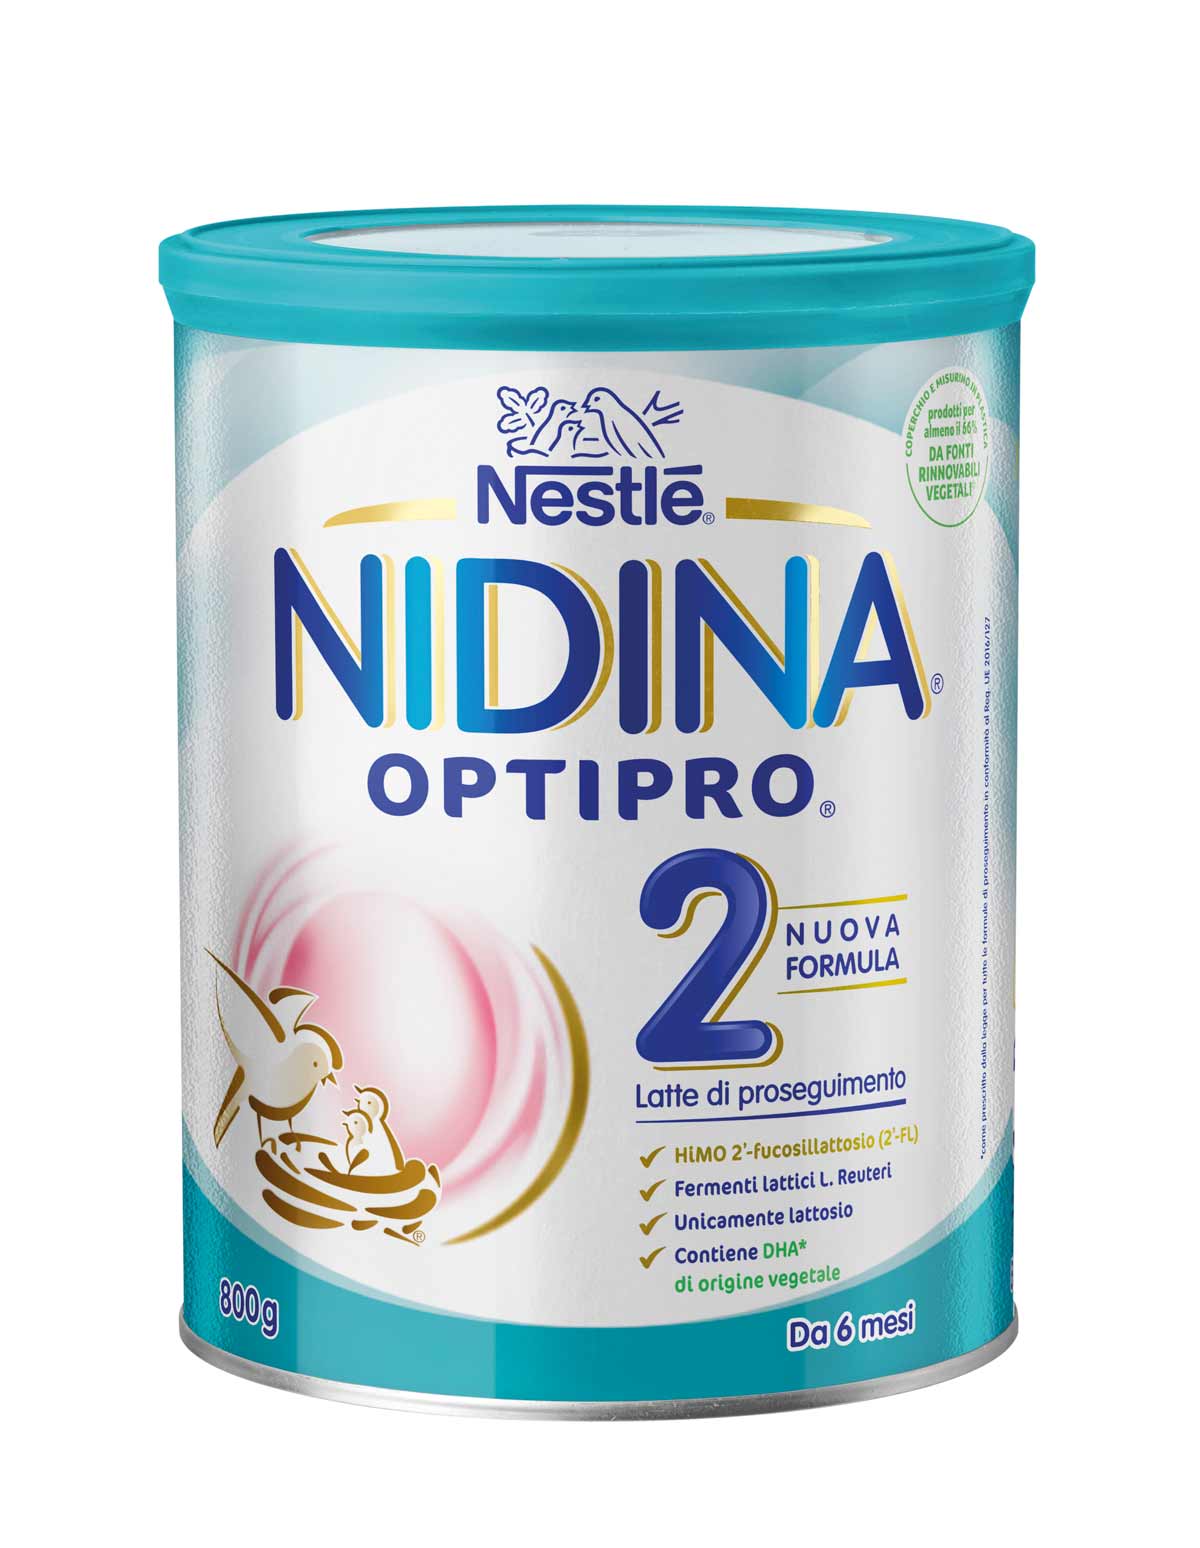 Nestlé NIDINA OPTIPRO 2 800g, Latte di proseguimento in polvere, dal 6° mese compiuto al 12°